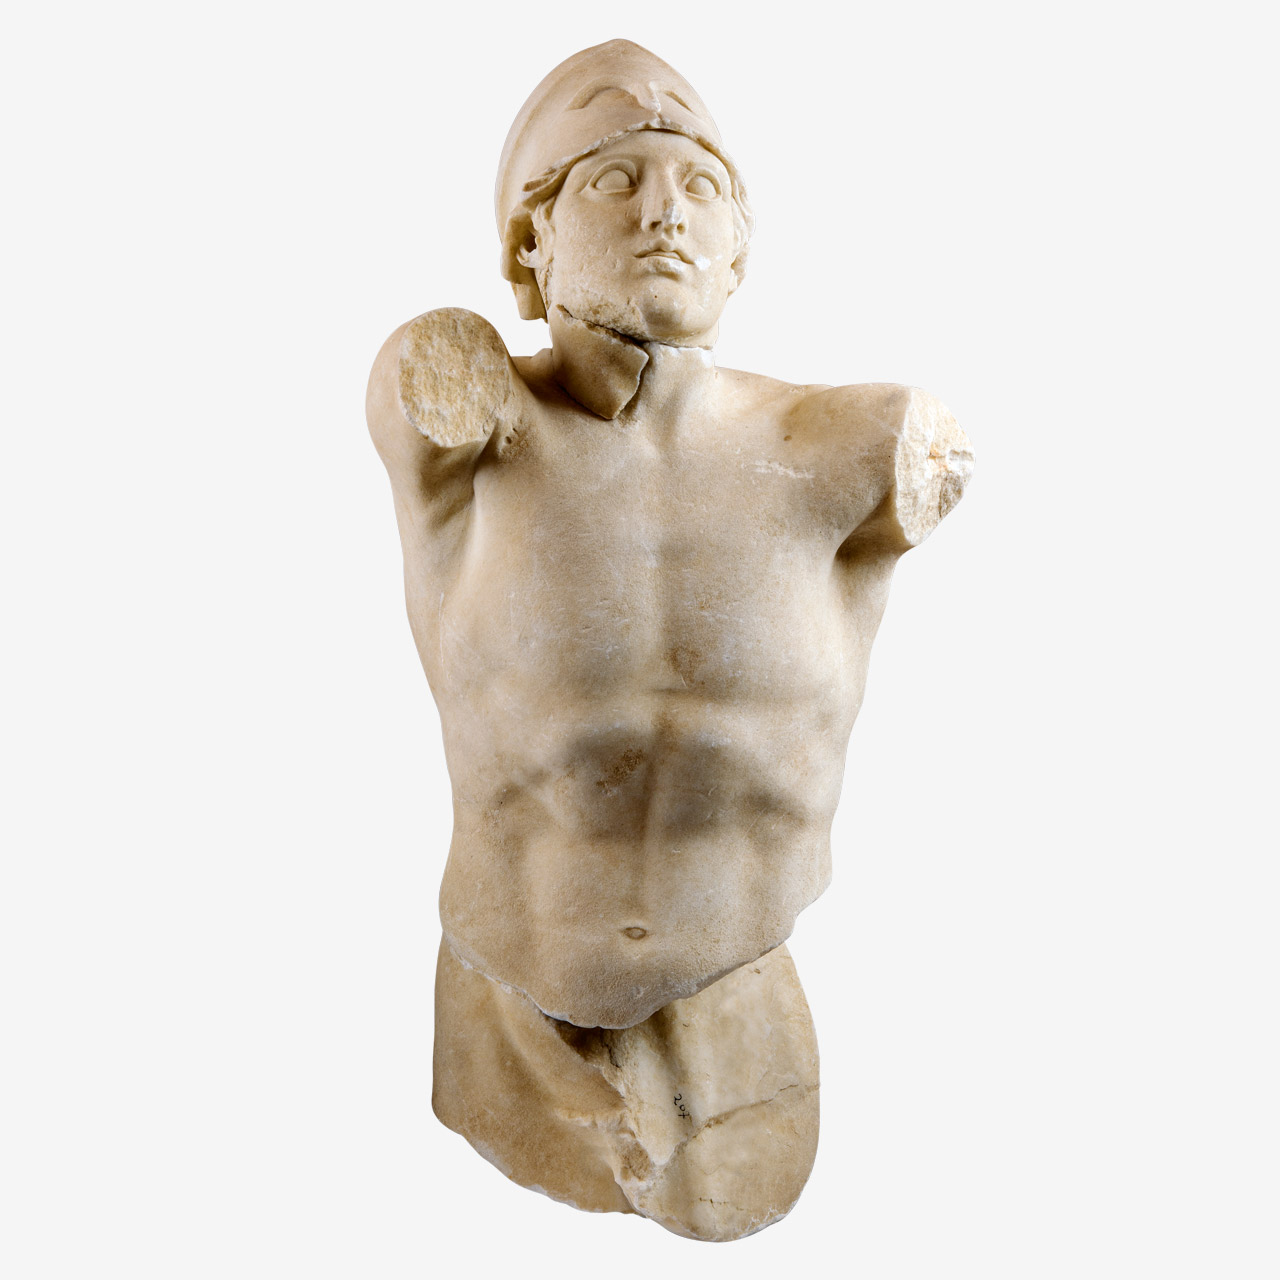 Μαρμάρινος γυμνός κρανοφόρος πολεμιστής από την παράσταση της Αμαζονομαχίας στο δυτικό αέτωμα του ναού της Αθηνάς Μακίστου στη Σκιλλουντία.